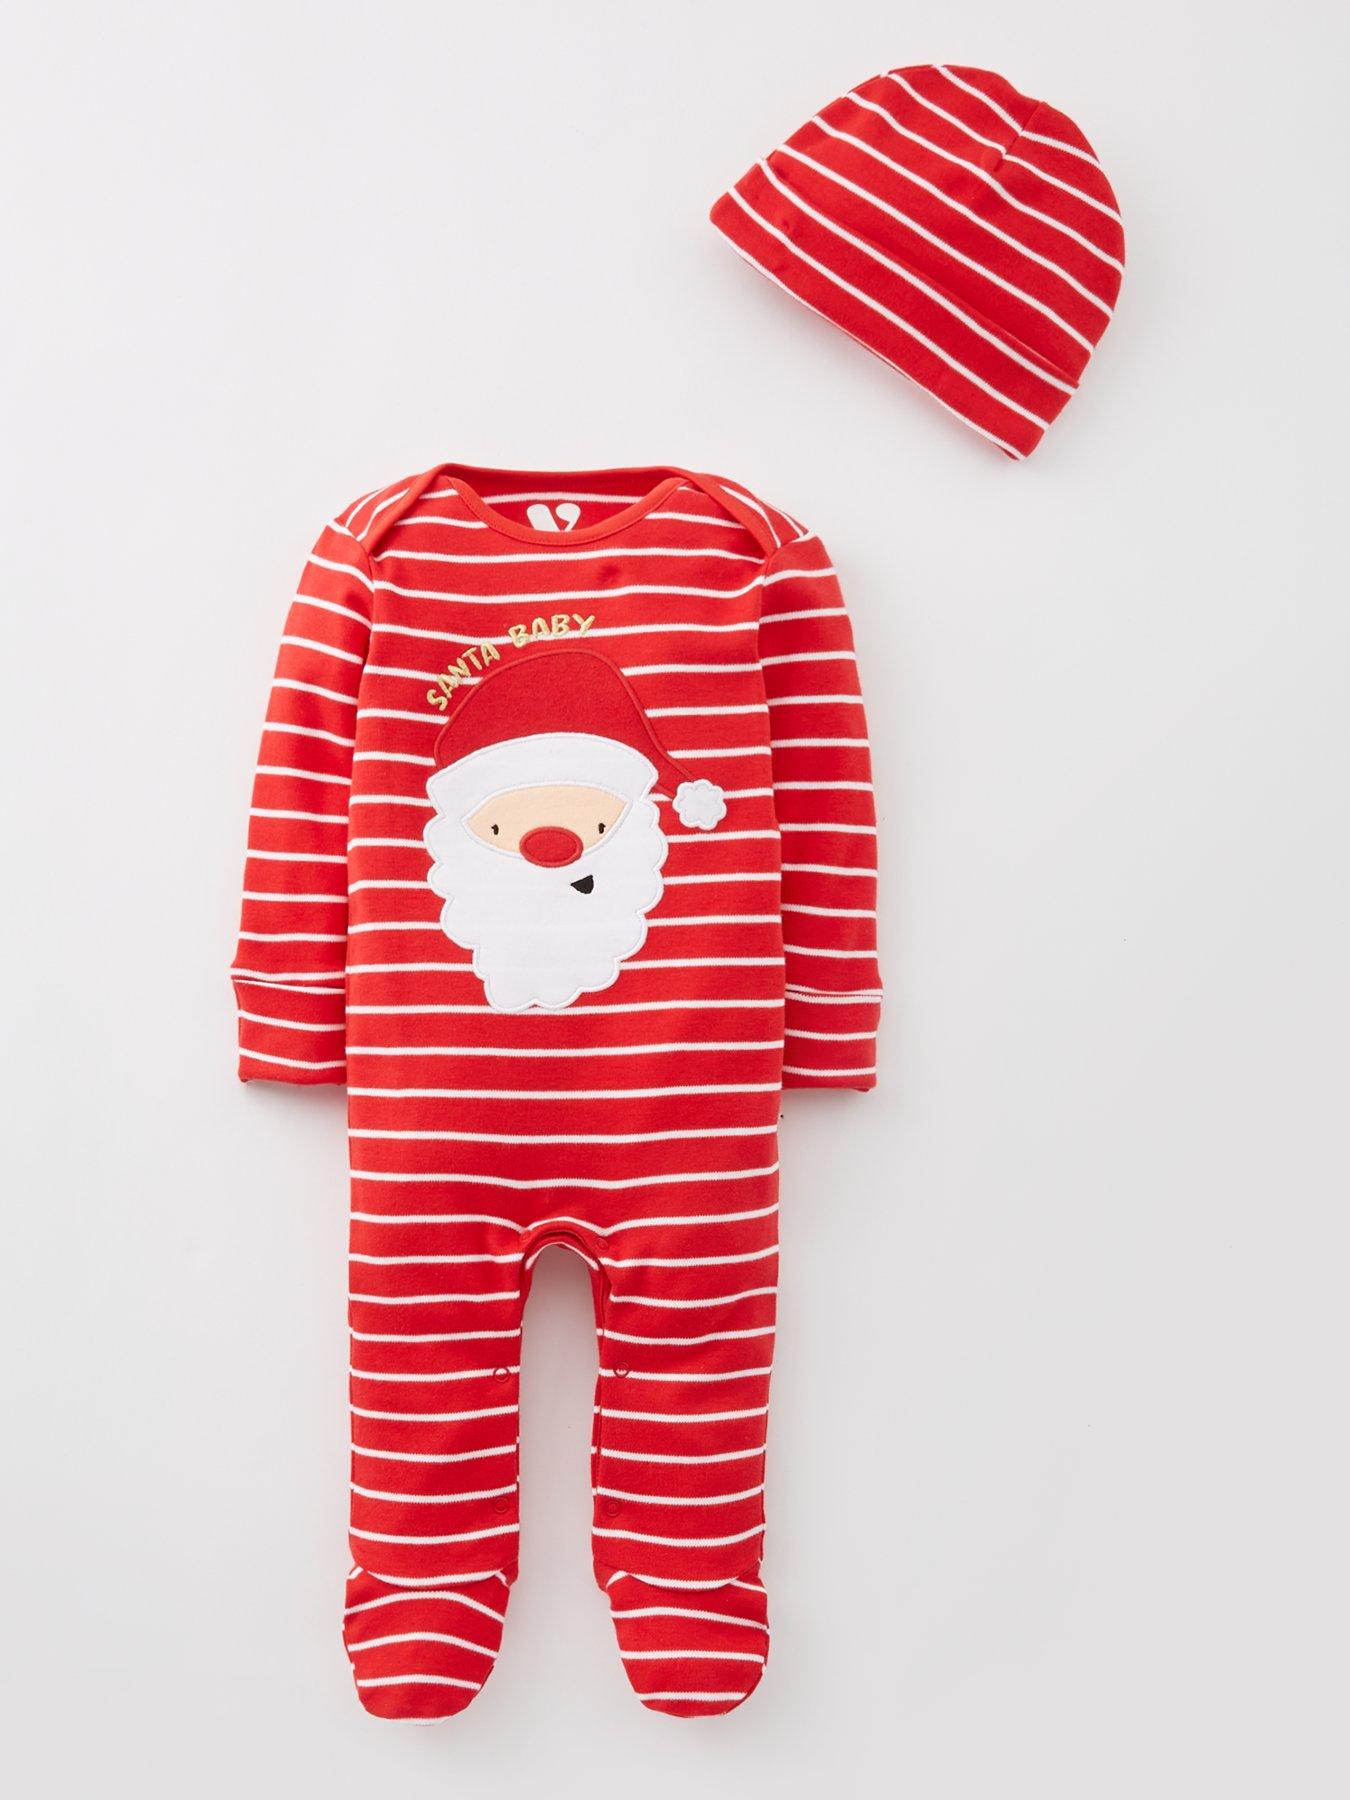 V by Very Ladies Family Red Check Revere Mini Me Christmas Pyjamas - Red